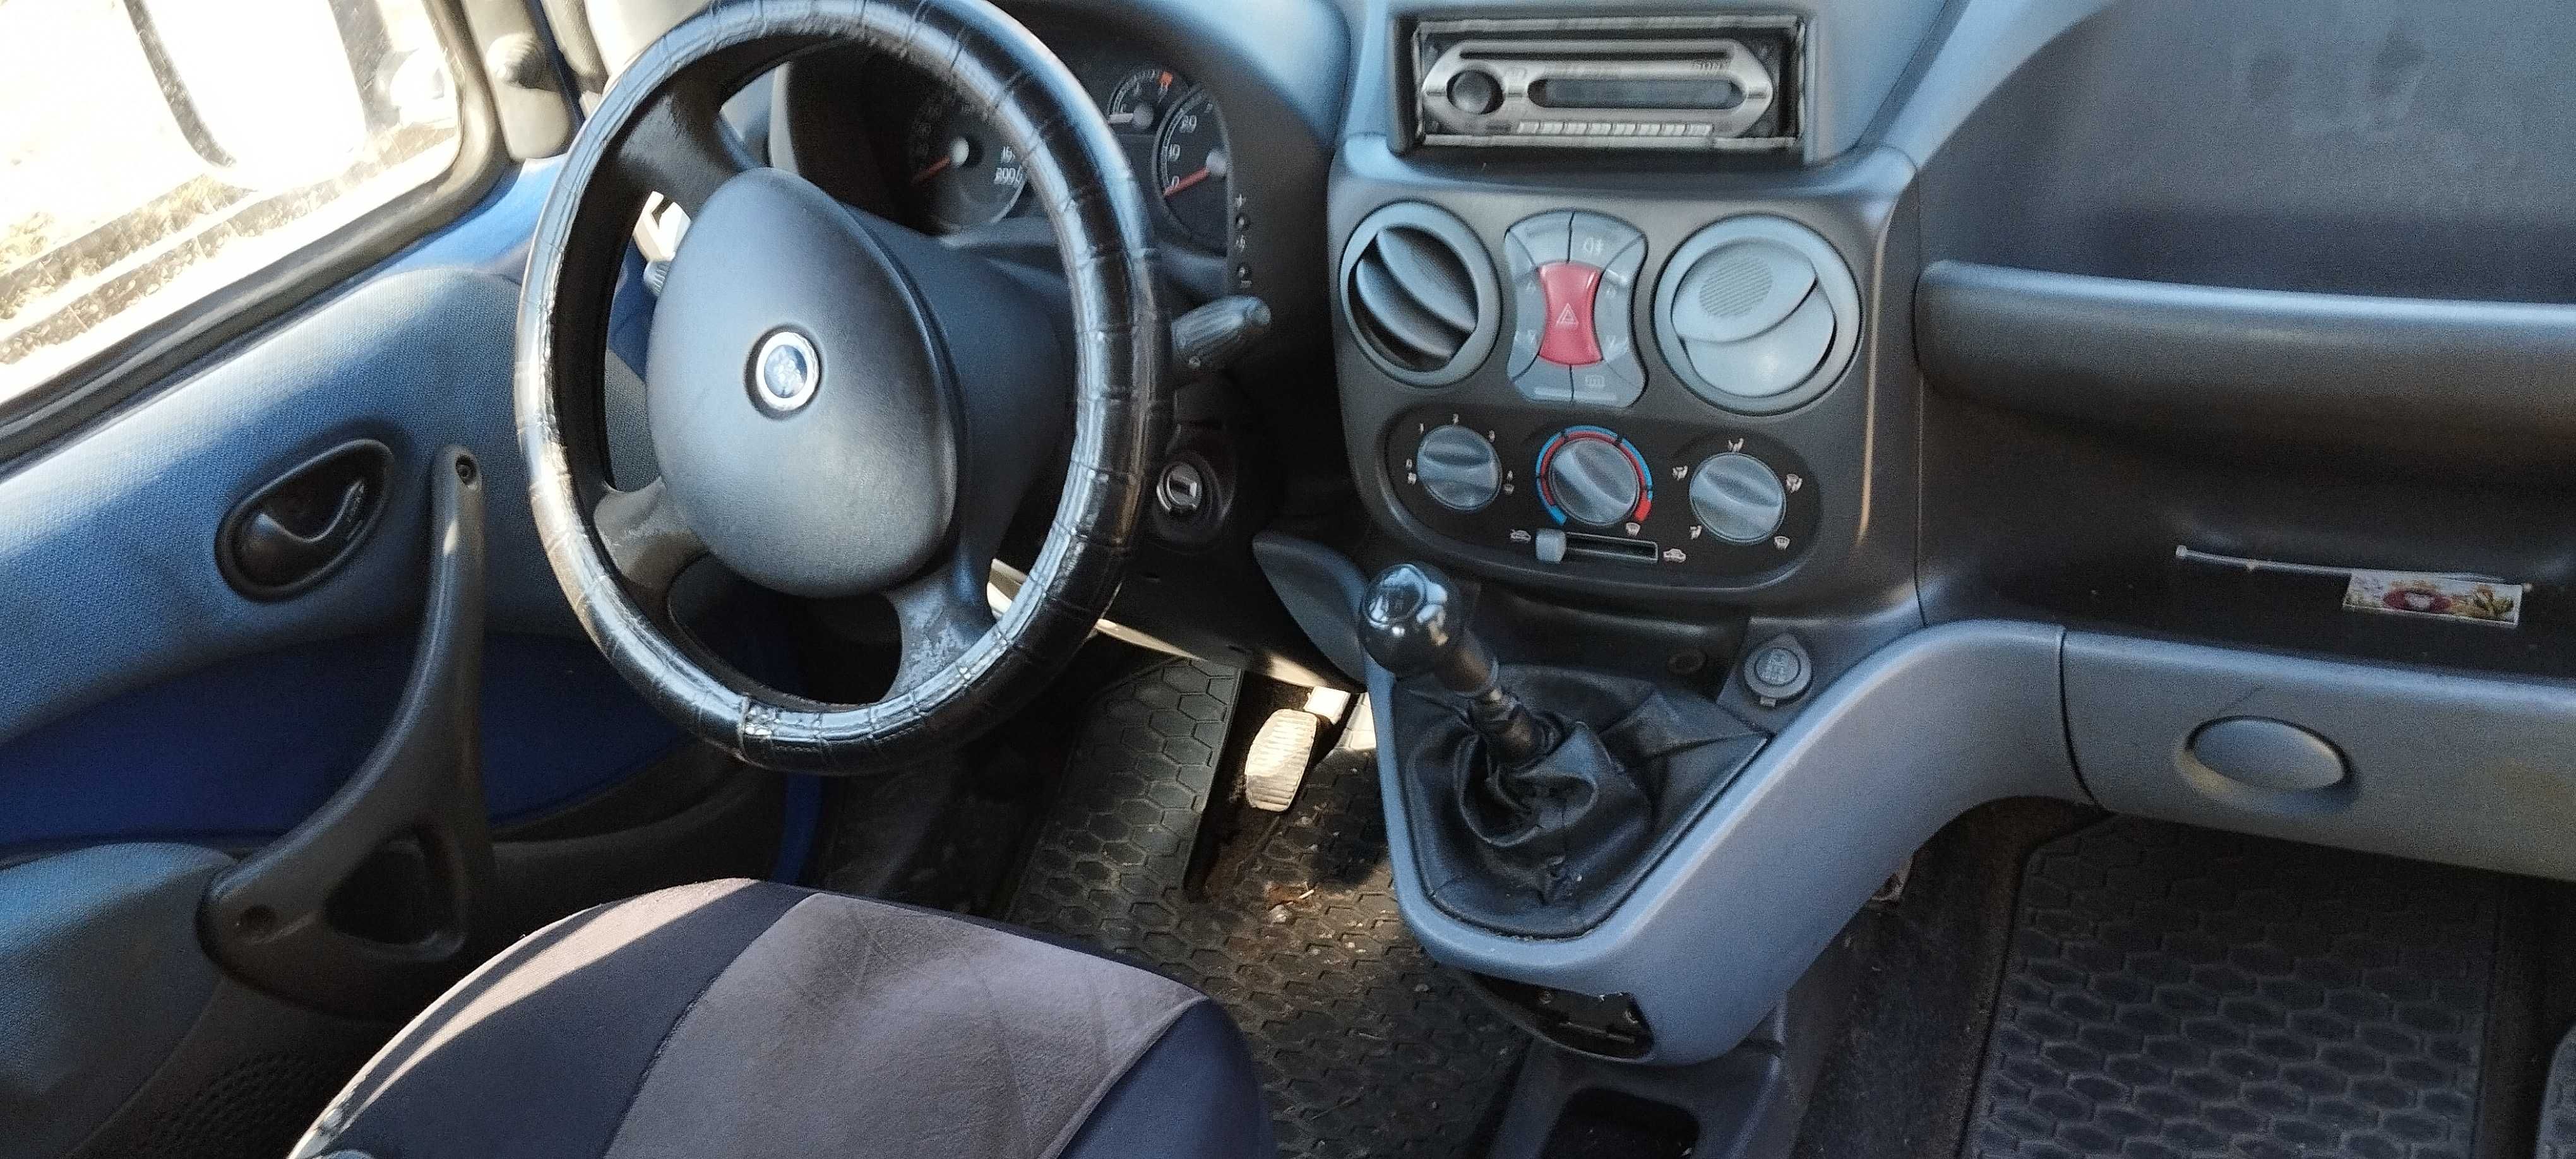 Fiat Doblo 1.3 Multijet